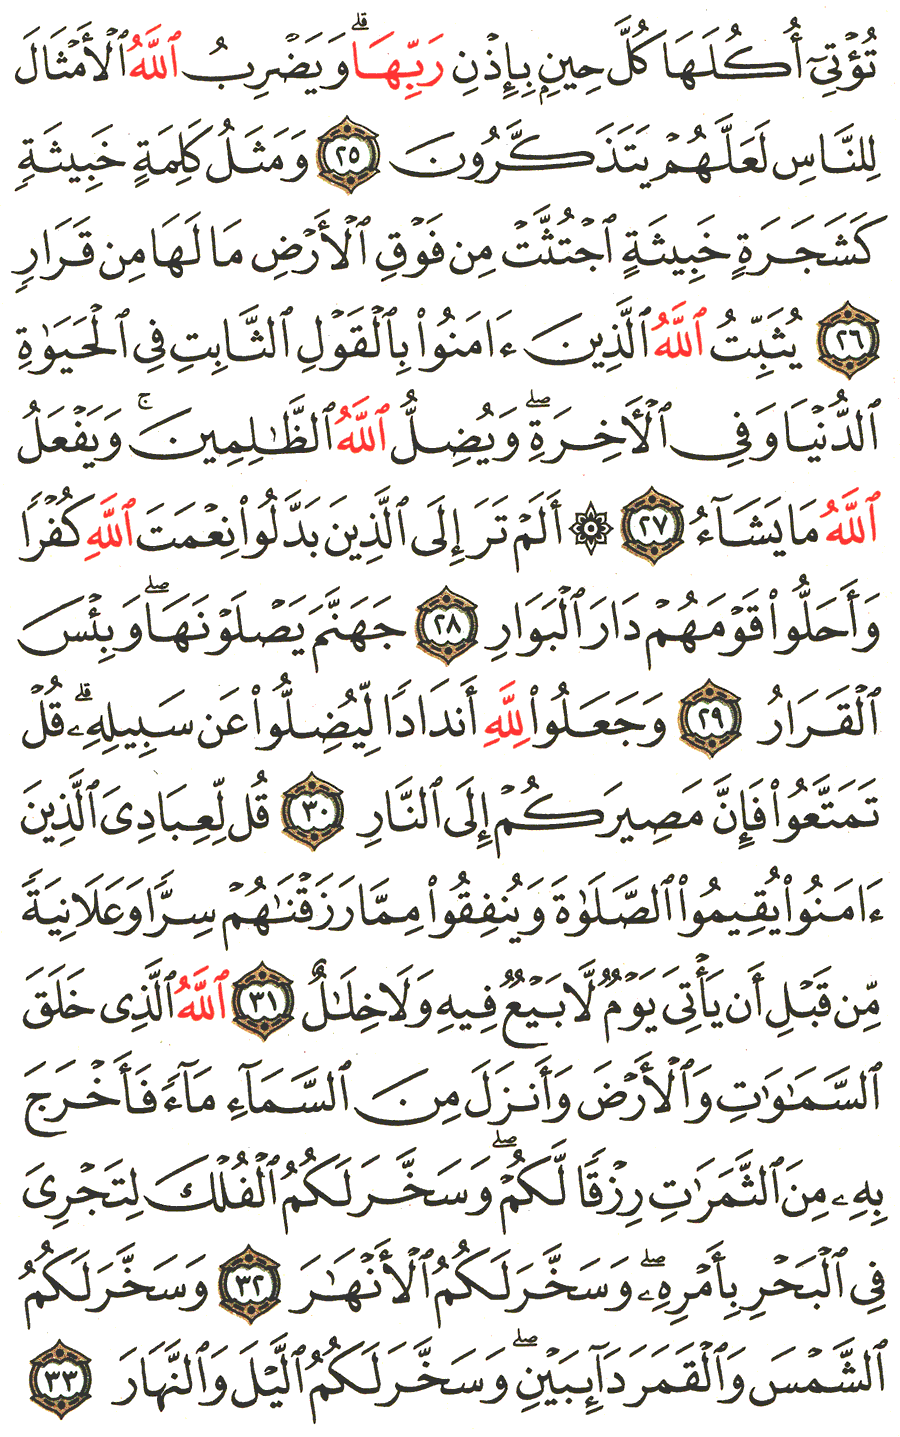 الصفحة رقم 259  من القرآن الكريم مكتوبة من المصحف